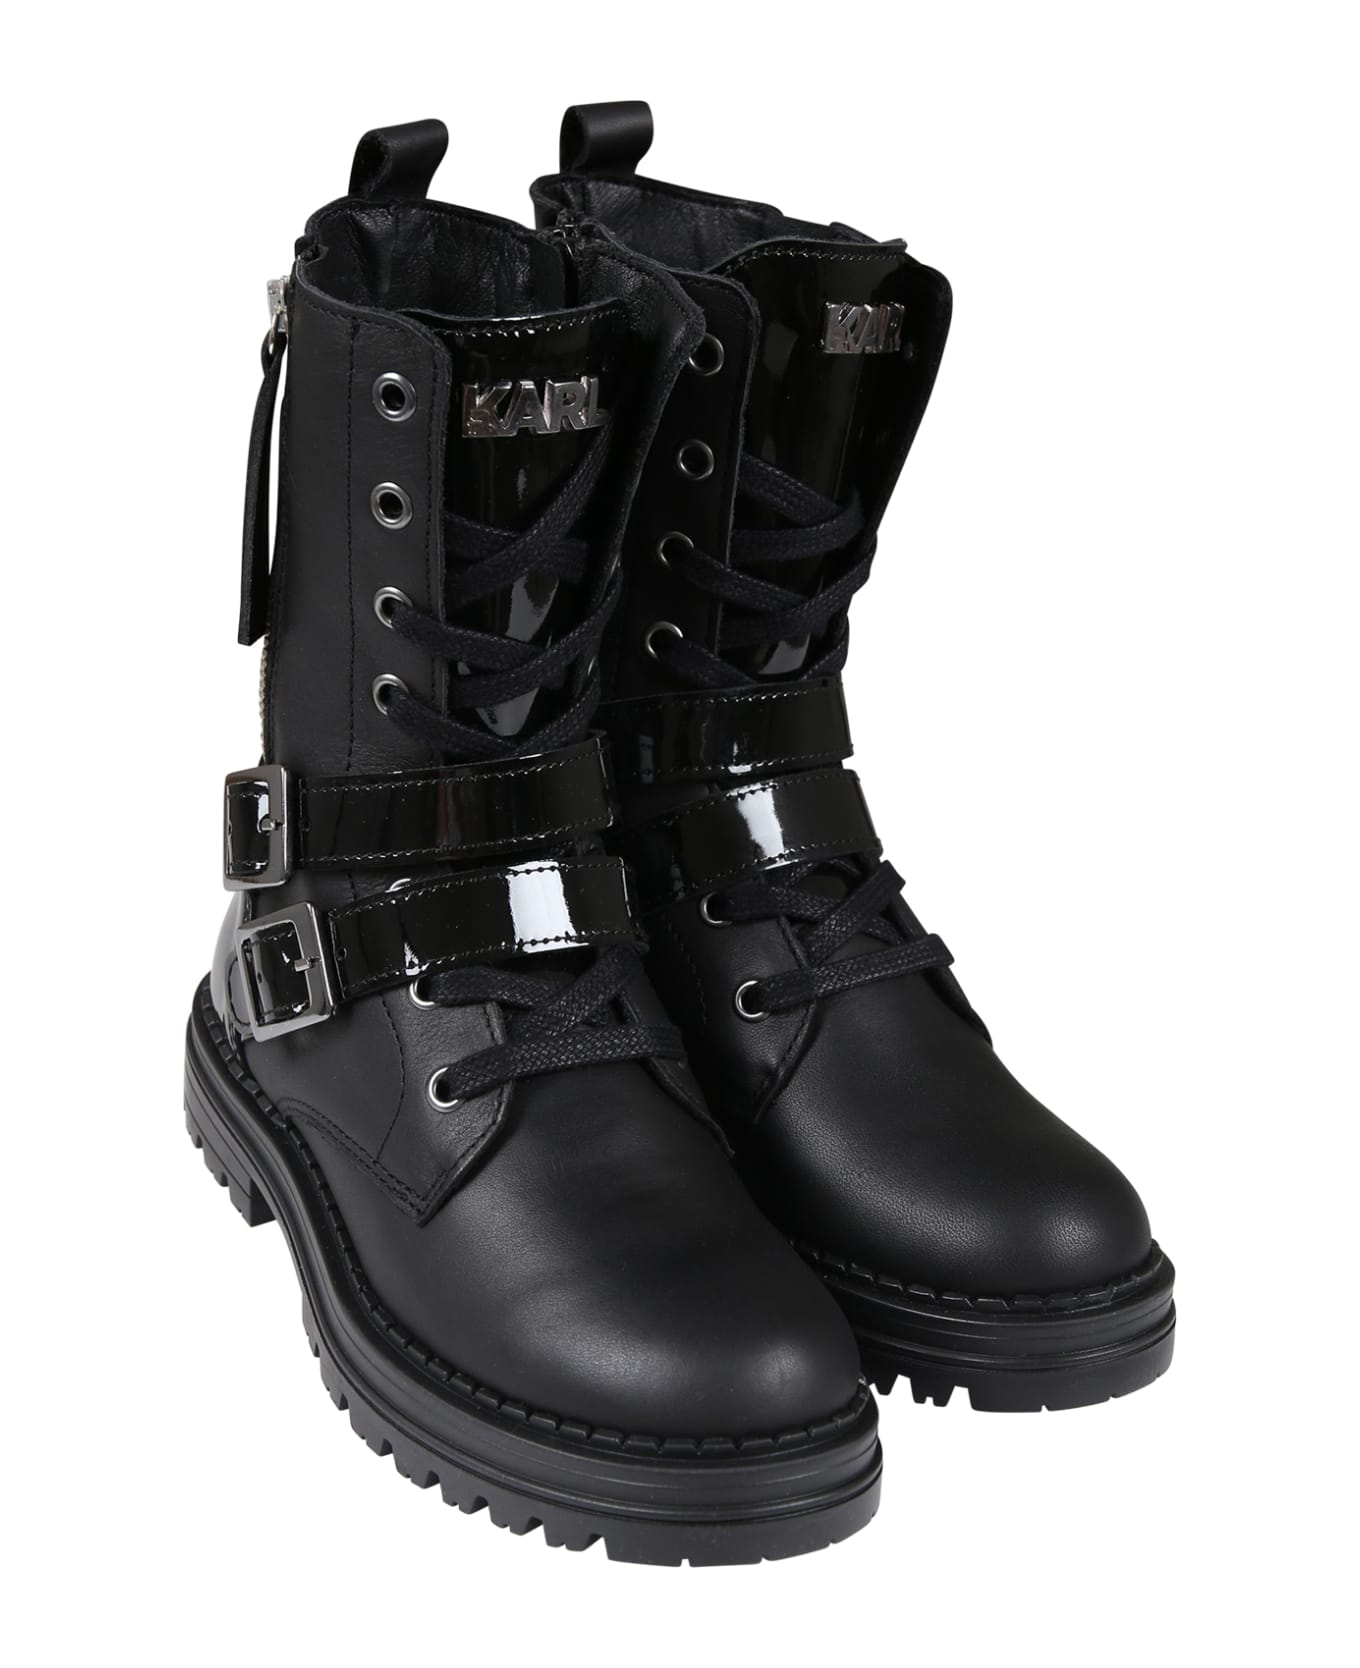 Karl Lagerfeld Kids Black Boots For Girl - Black